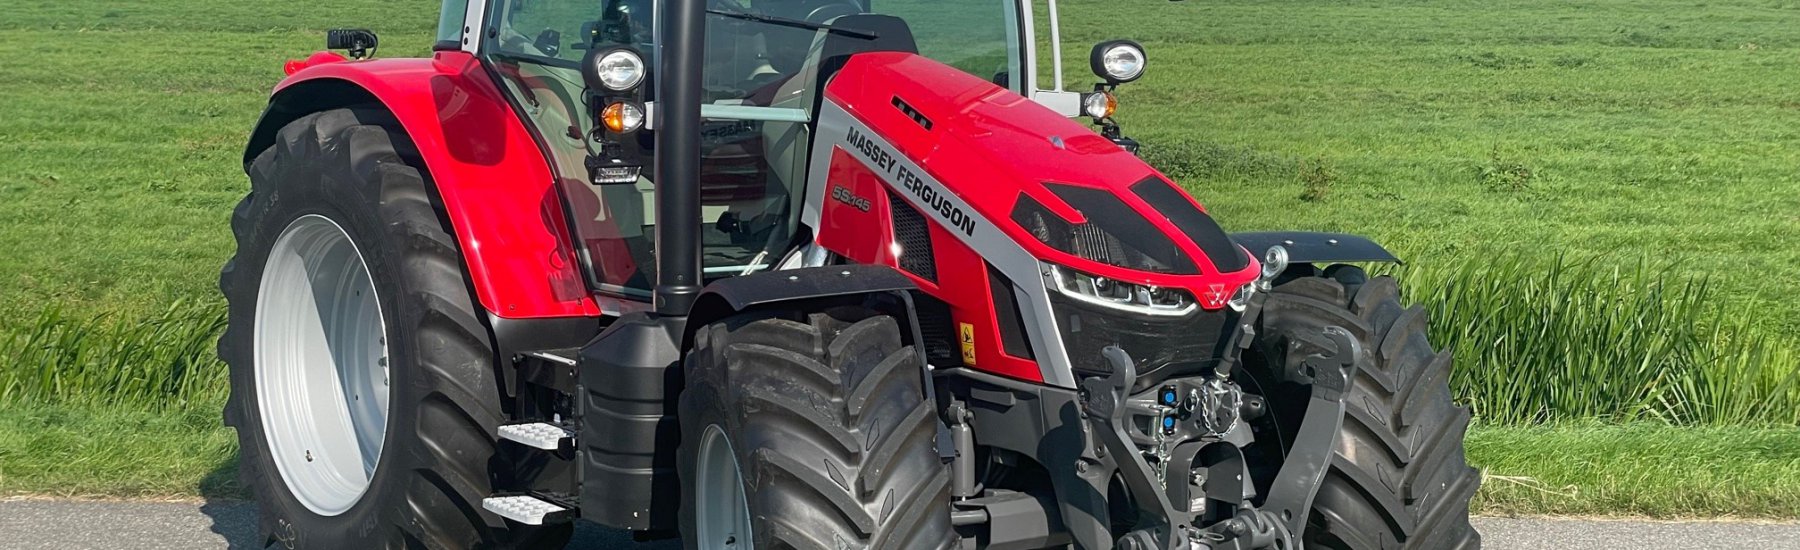 Speciale actie: tijdelijk een beperkt aantal Massey Ferguson 5711M Dyna-4 tractoren voor een zeer aantrekkelijke prijs!